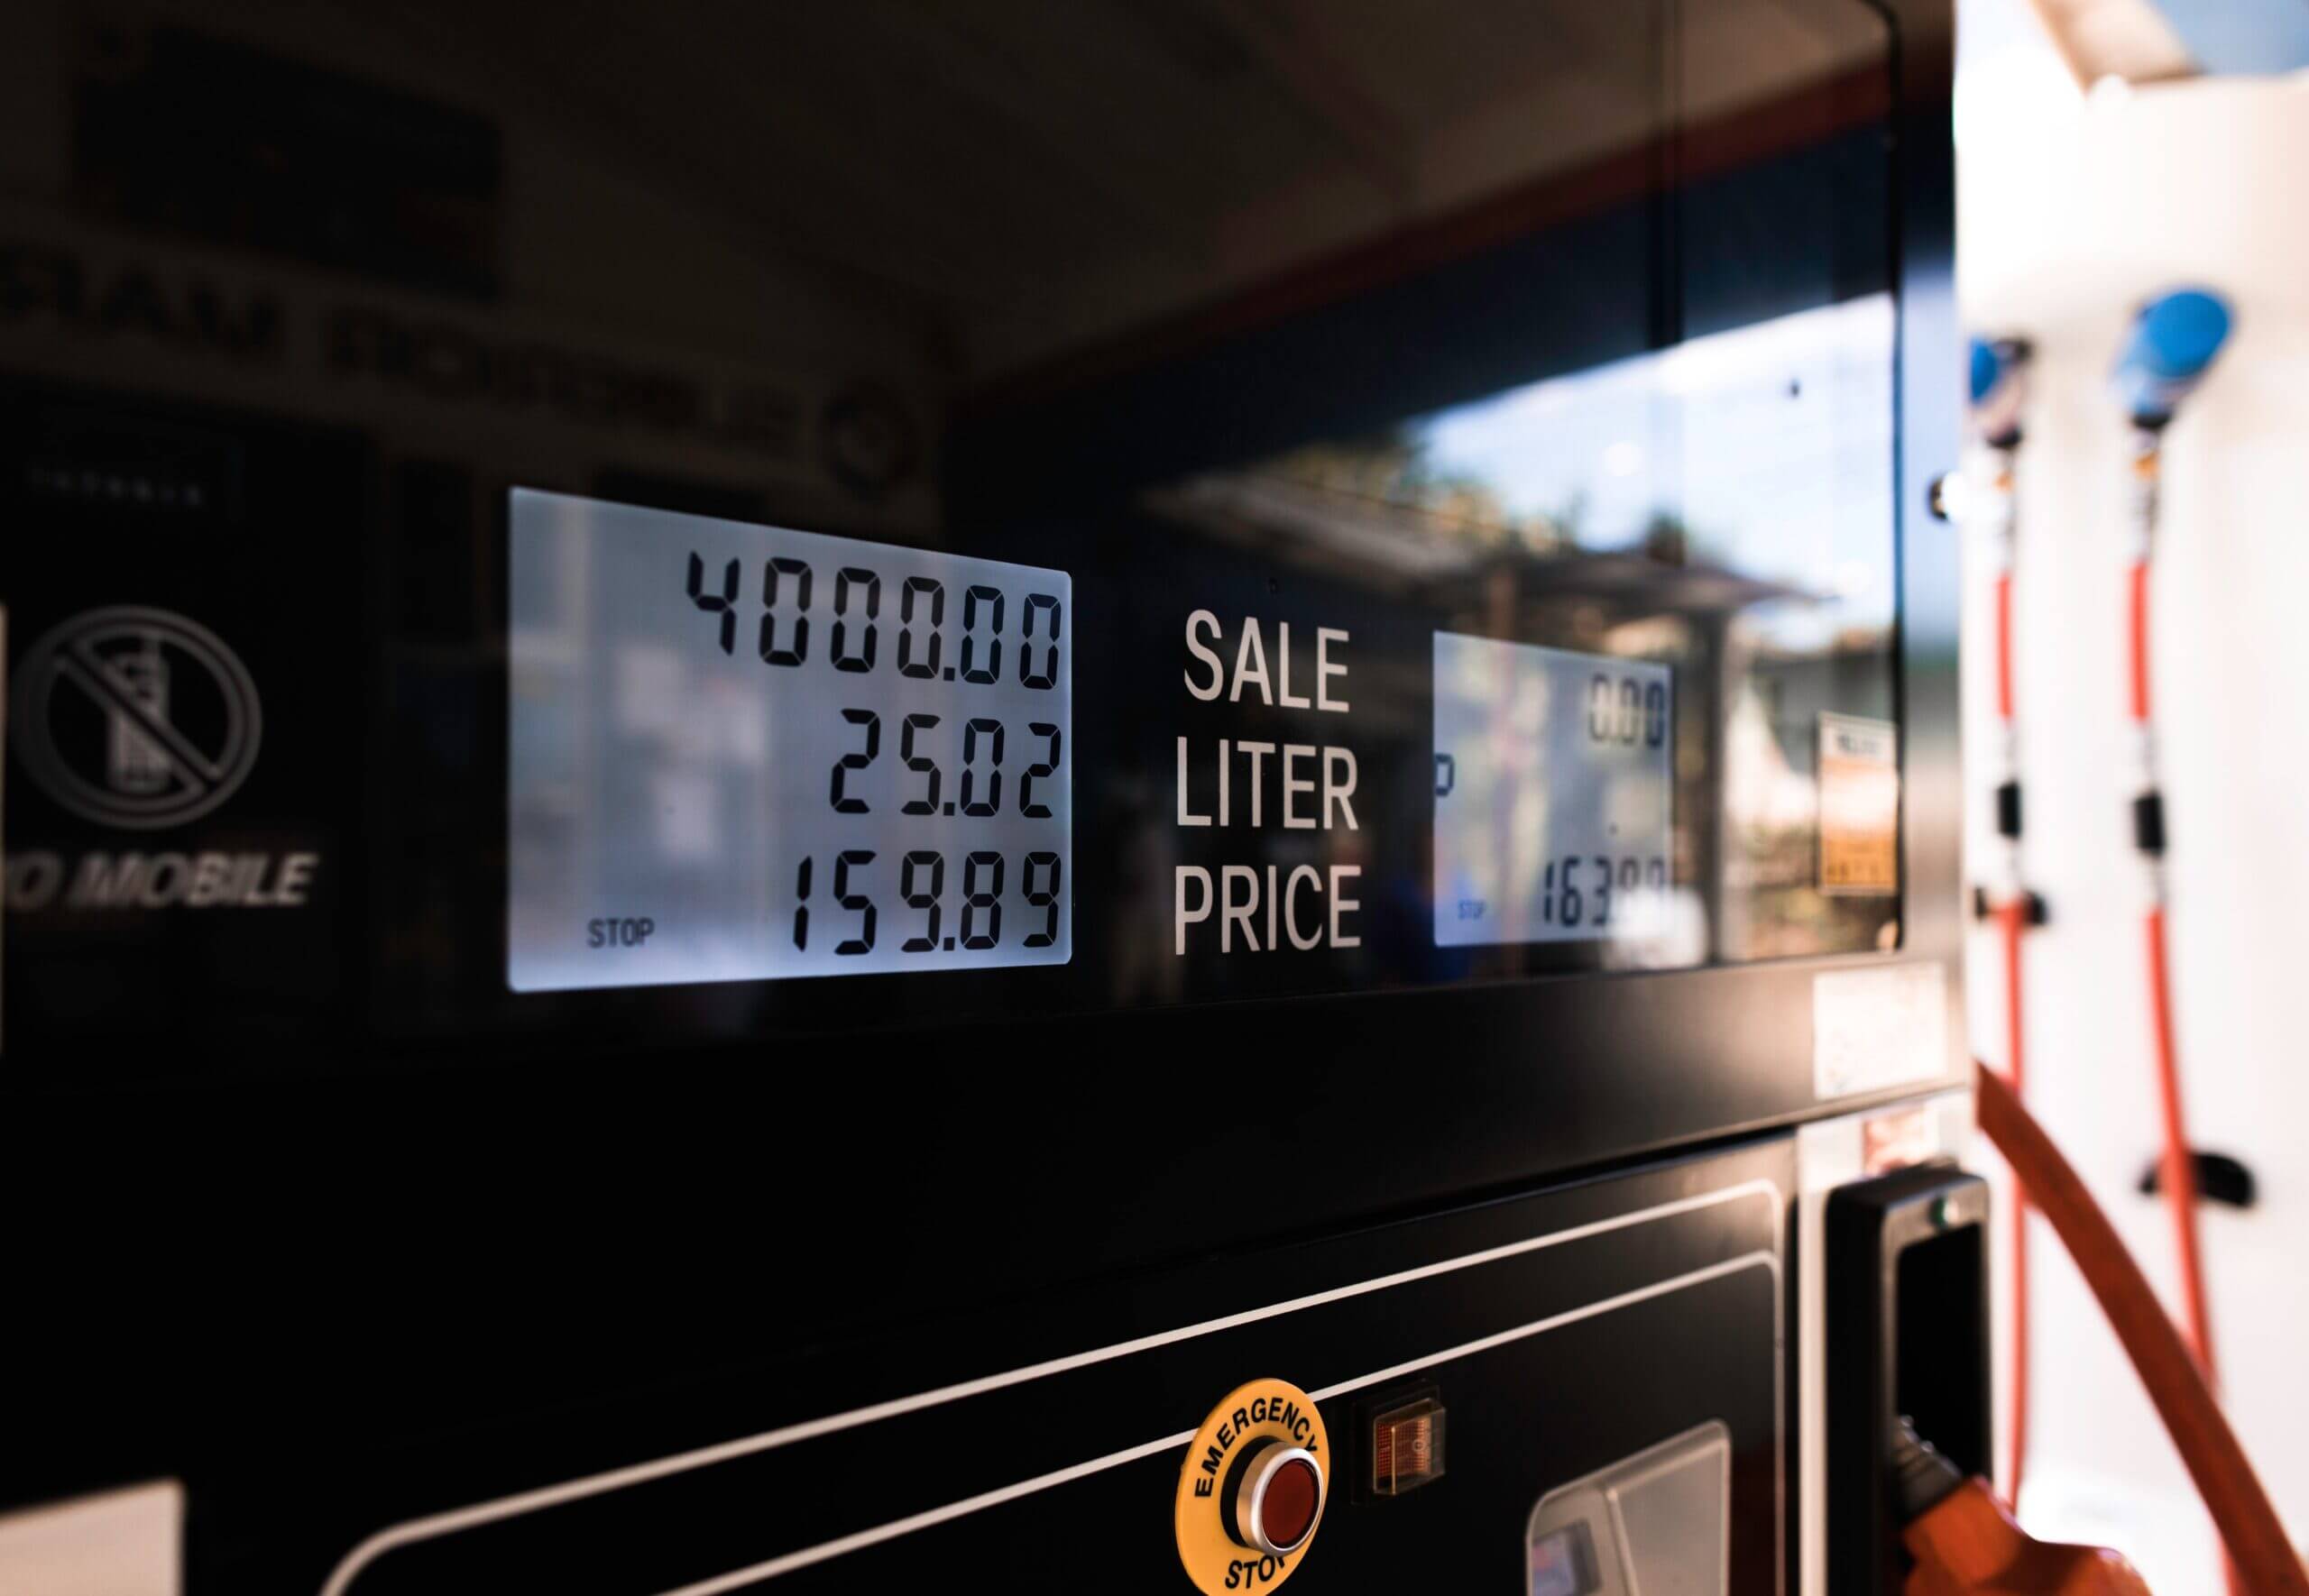 لماذا ارتفع سعر الوقود في بريطانيا بهذه السرعة وكيف نحد من المشكلة ؟